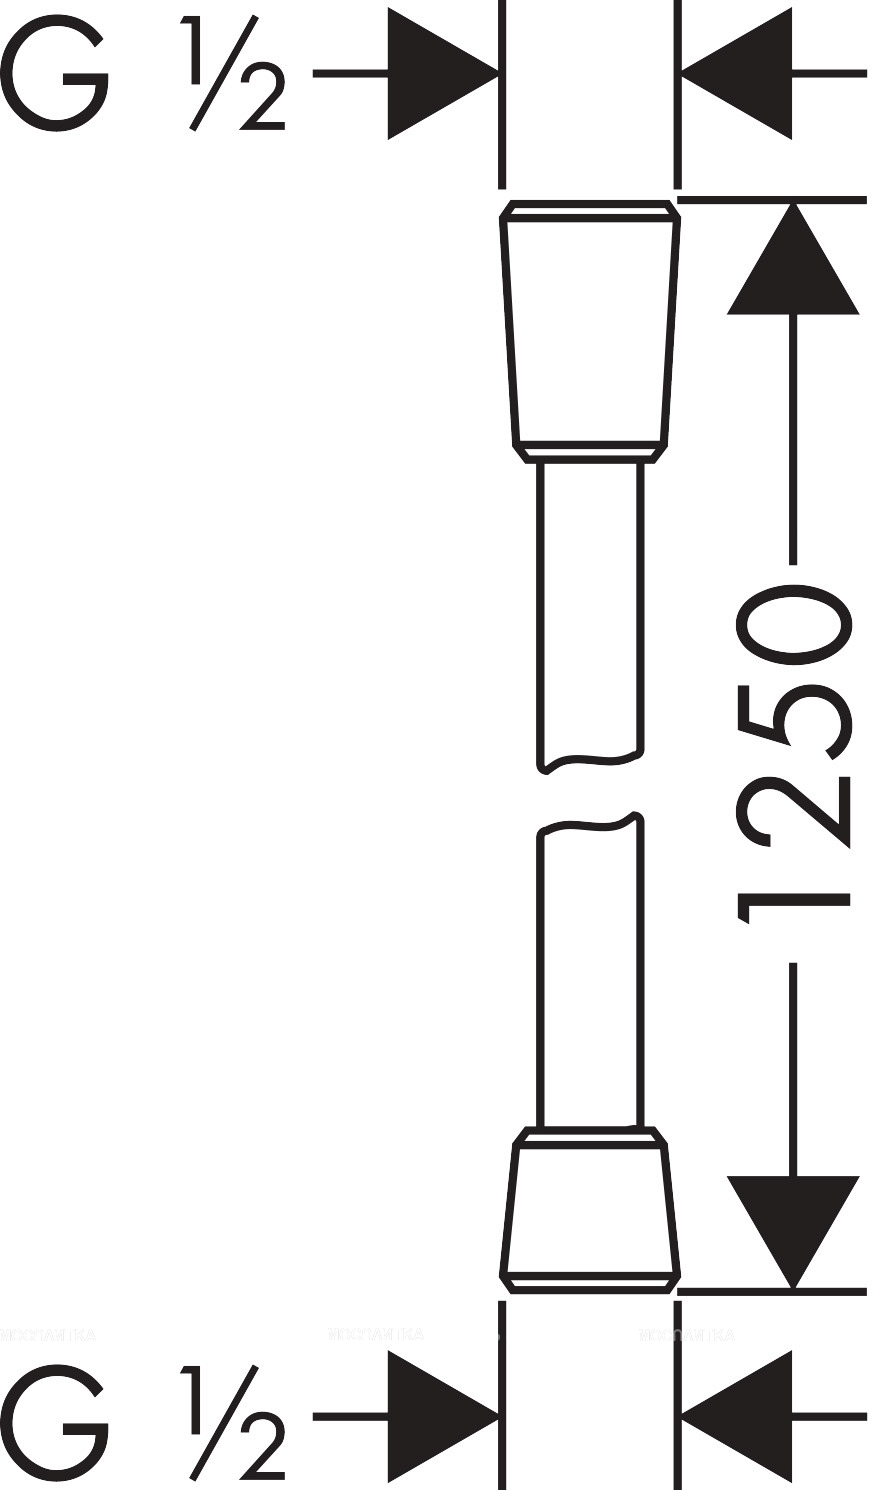 Шланг для душа Hansgrohe Isiflex 125 см 28272140, шлифованная бронза - изображение 2